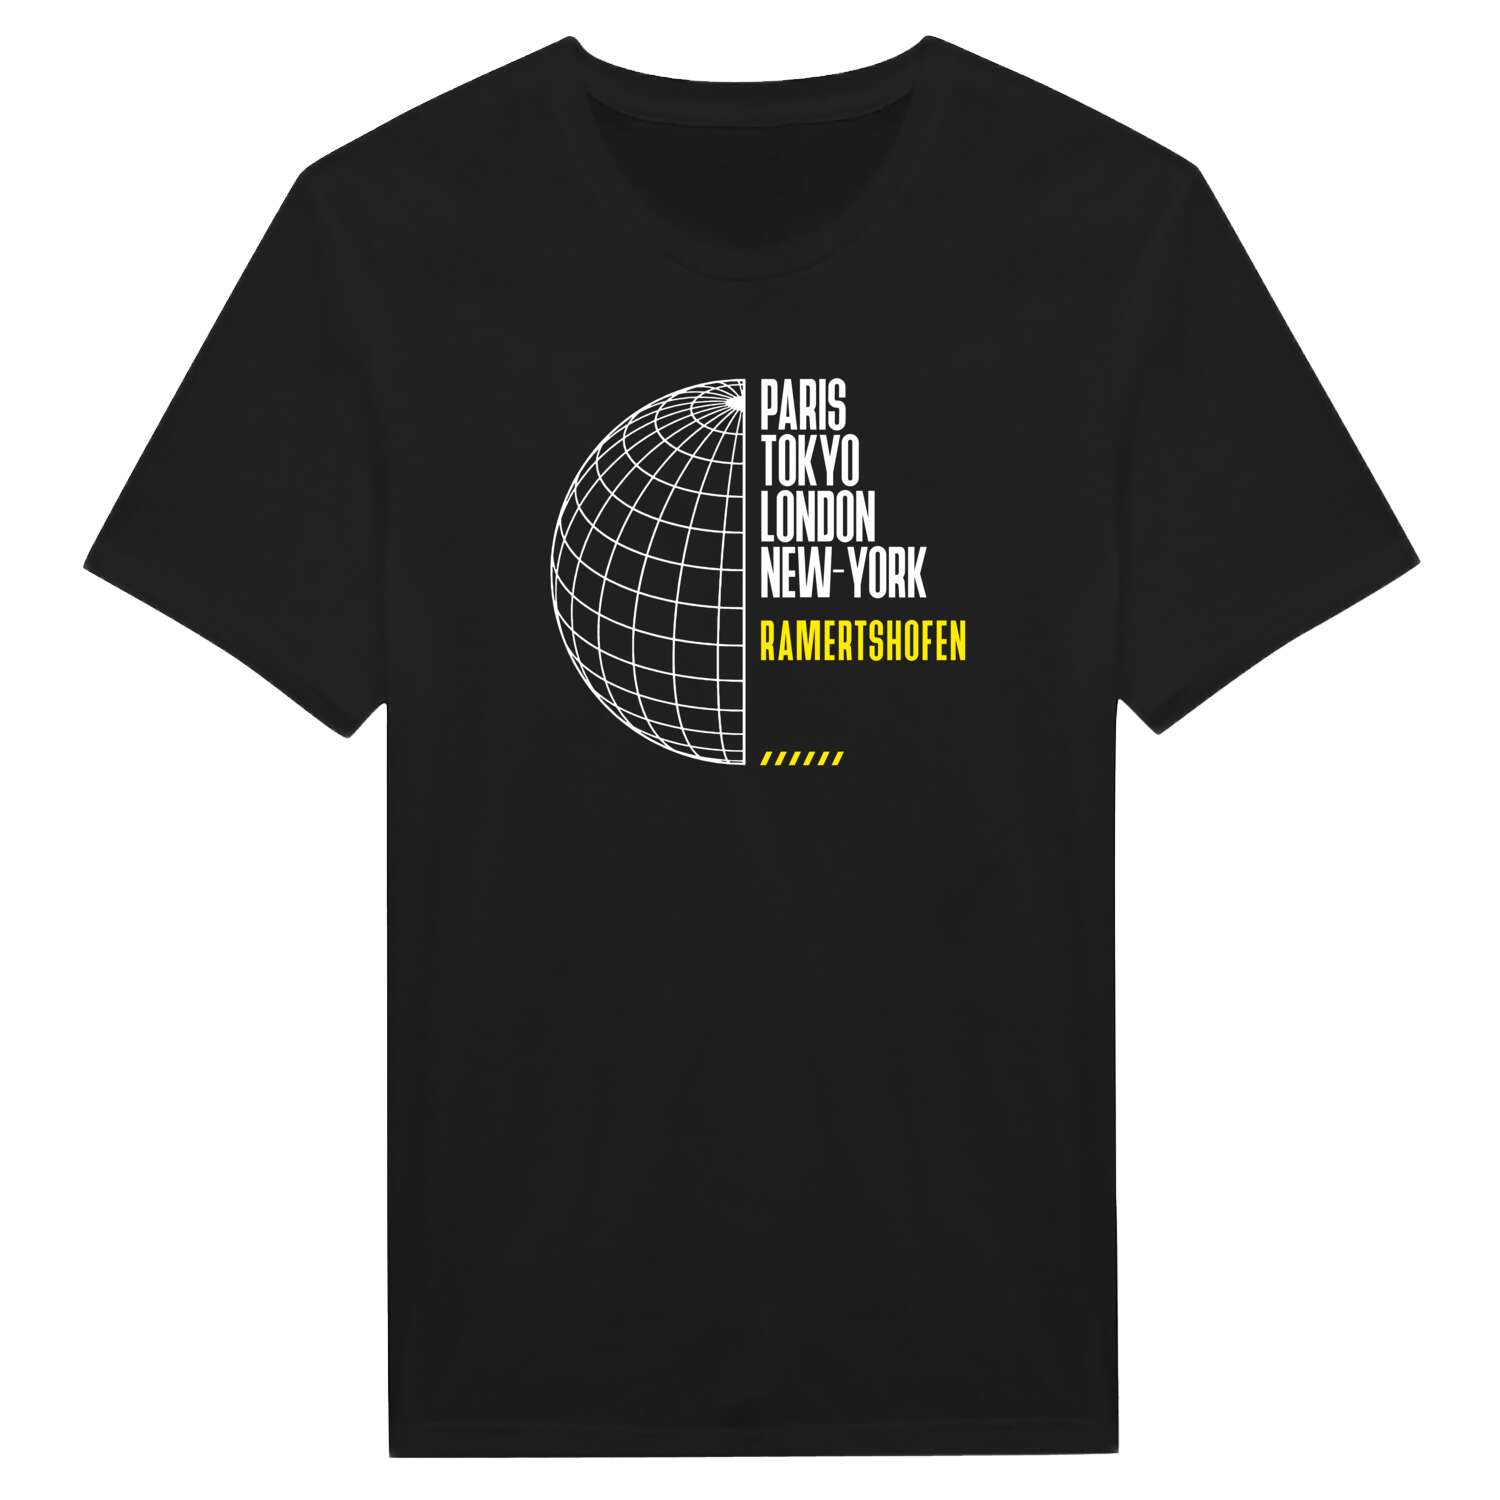 Ramertshofen T-Shirt »Paris Tokyo London«